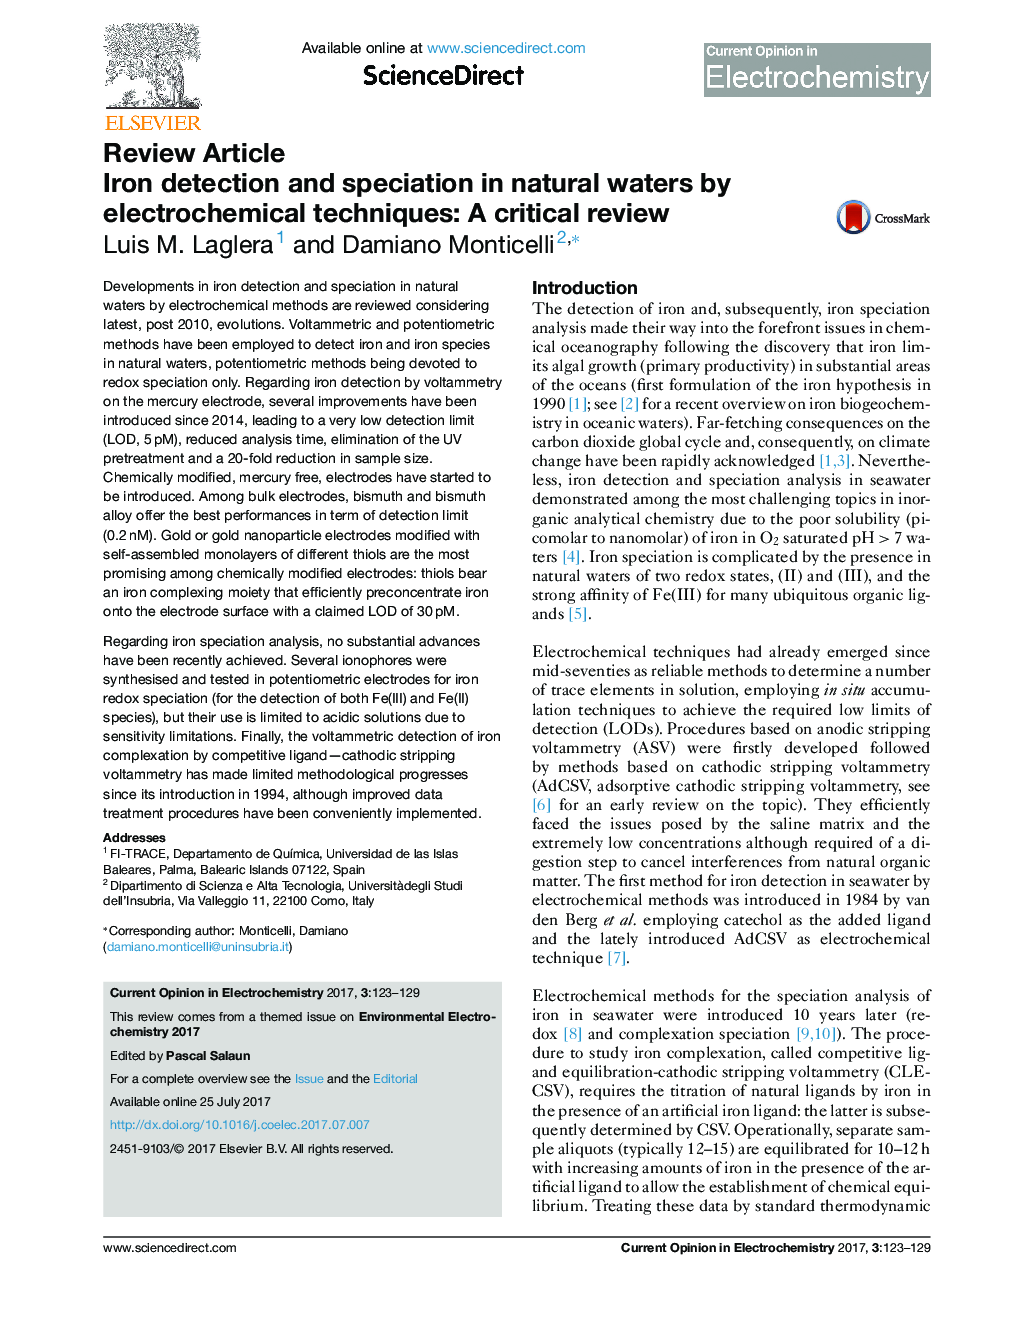 تشخیص و تشخیص آهن در آب های طبیعی با استفاده از تکنیک های الکتروشیمیایی: بررسی بحرانی 